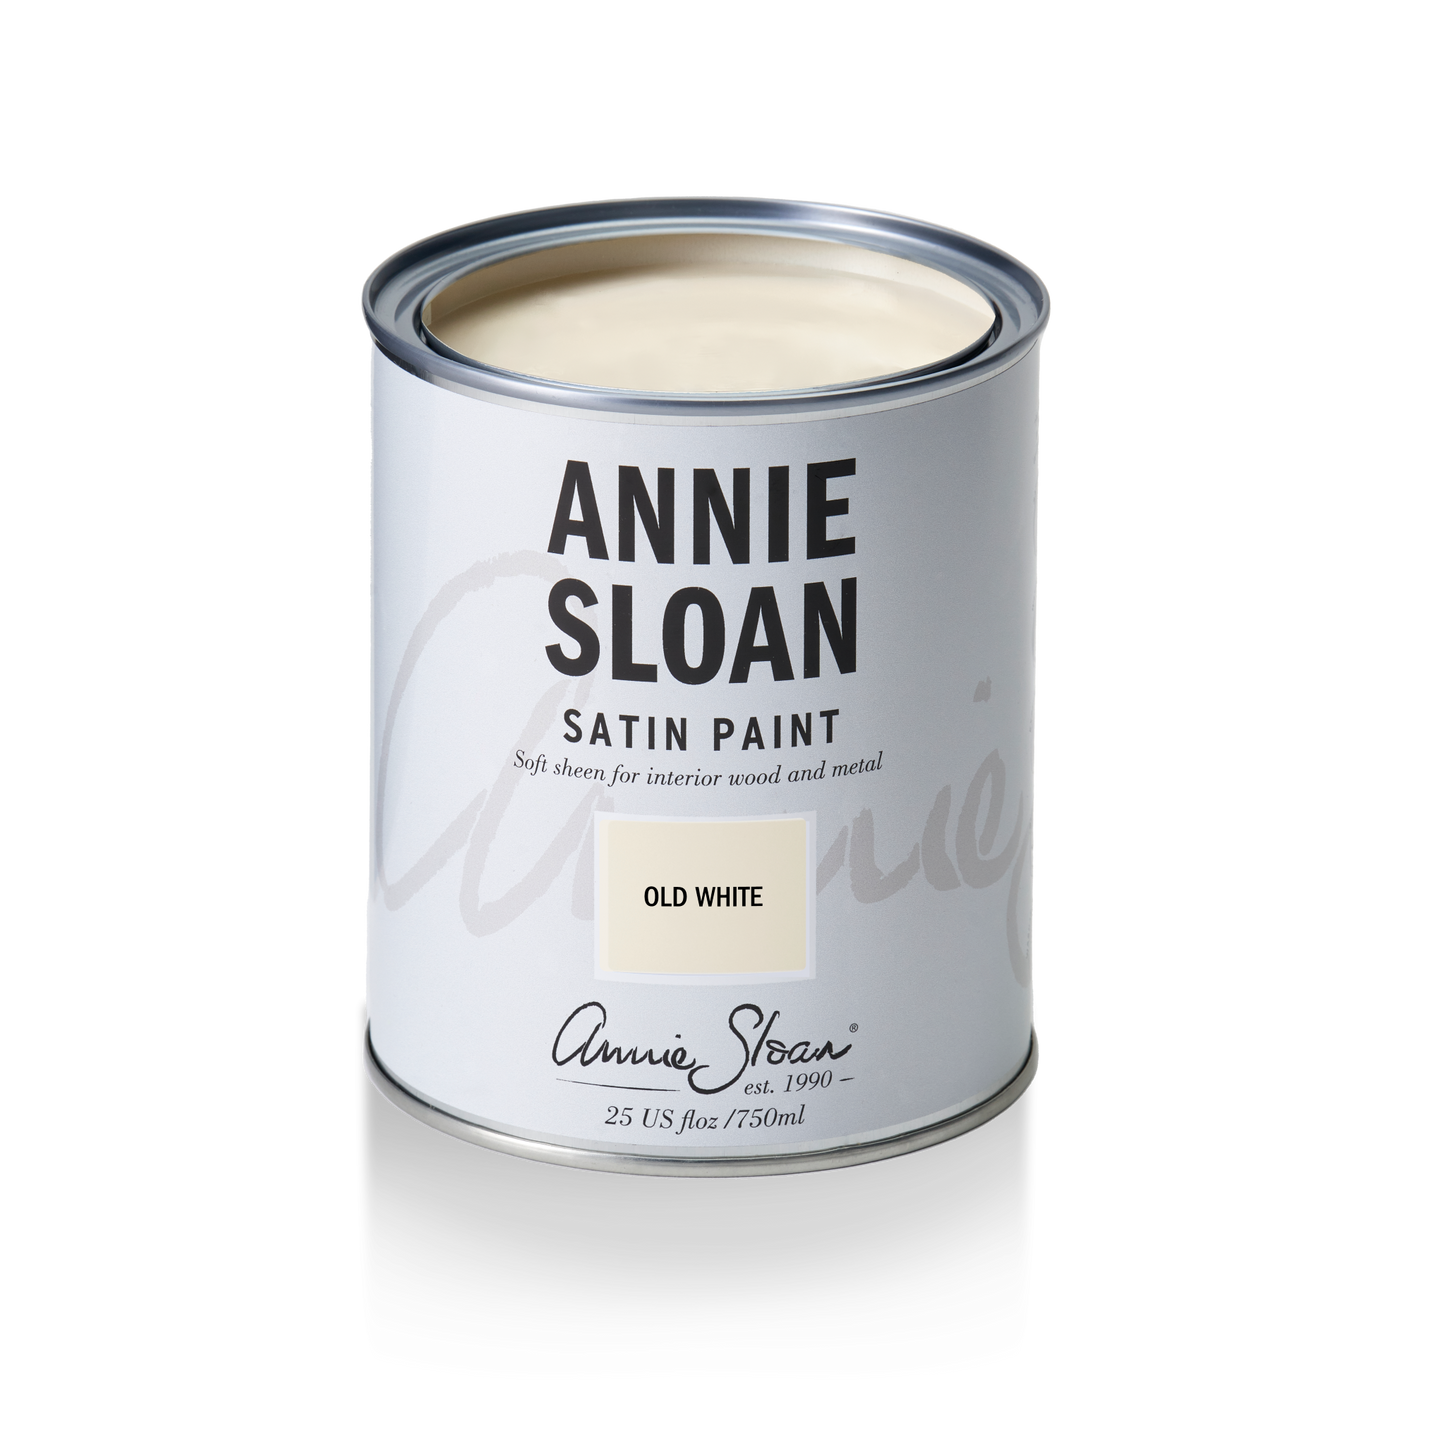 Annie Sloan Satin Paint Old White, 750 ml Tin